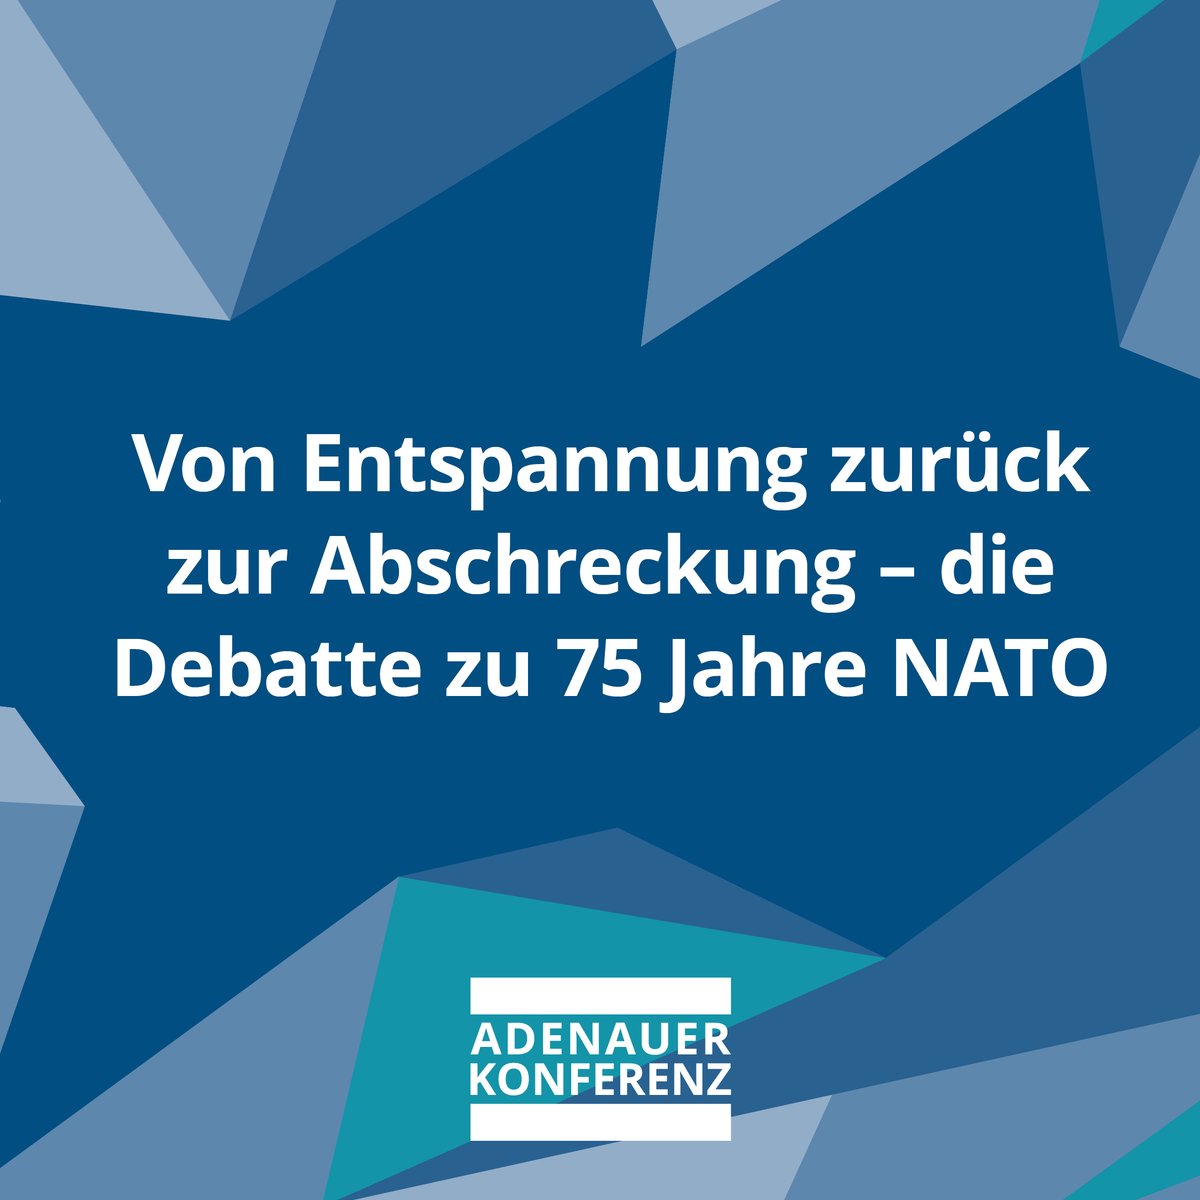 75 Jahre #NATO – Die Debatte von Entspannung zu glaubwürdiger Abschreckung prägt die XII. #AdenauerKonferenz. #Europa muss Einigkeit zeigen, um die 🇺🇸 im Bündnis zu halten & sicherheitspolitischen Herausforderungen zu begegnen. Jetzt anmelden: kas.de/de/veranstaltu…